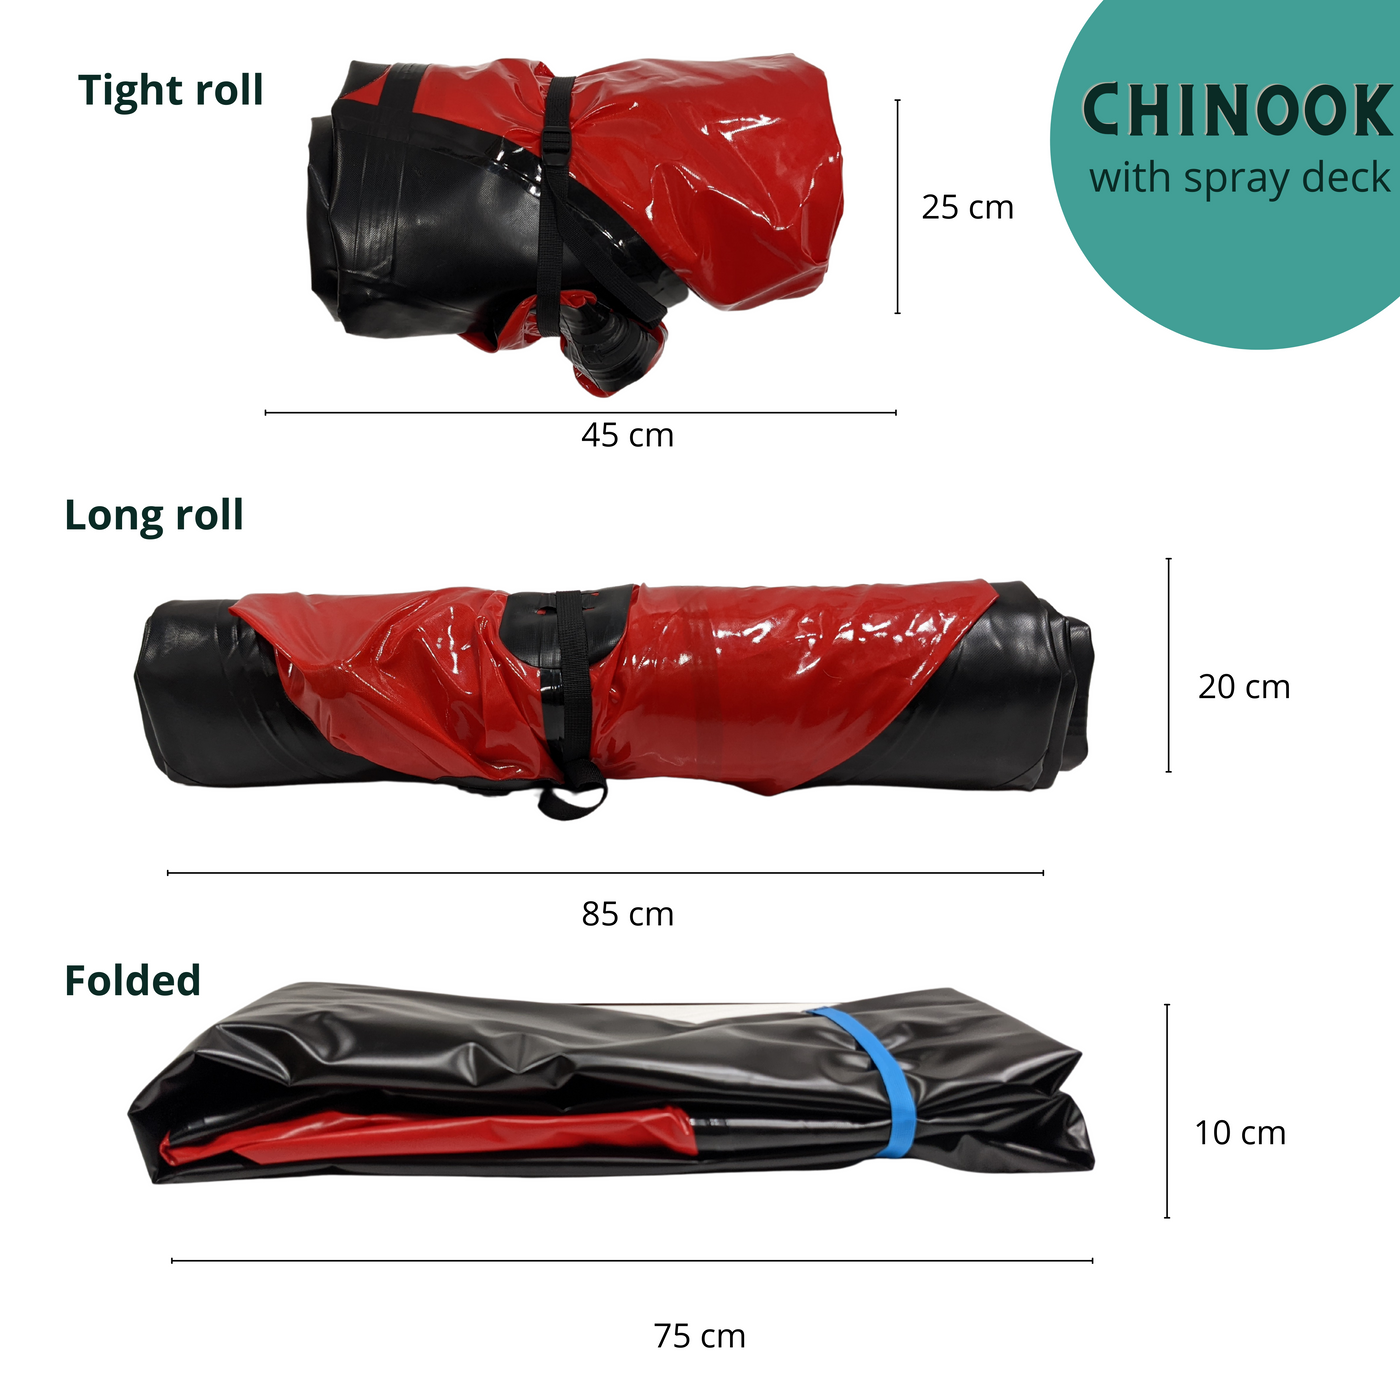 Chinook - SD (spraydeck)